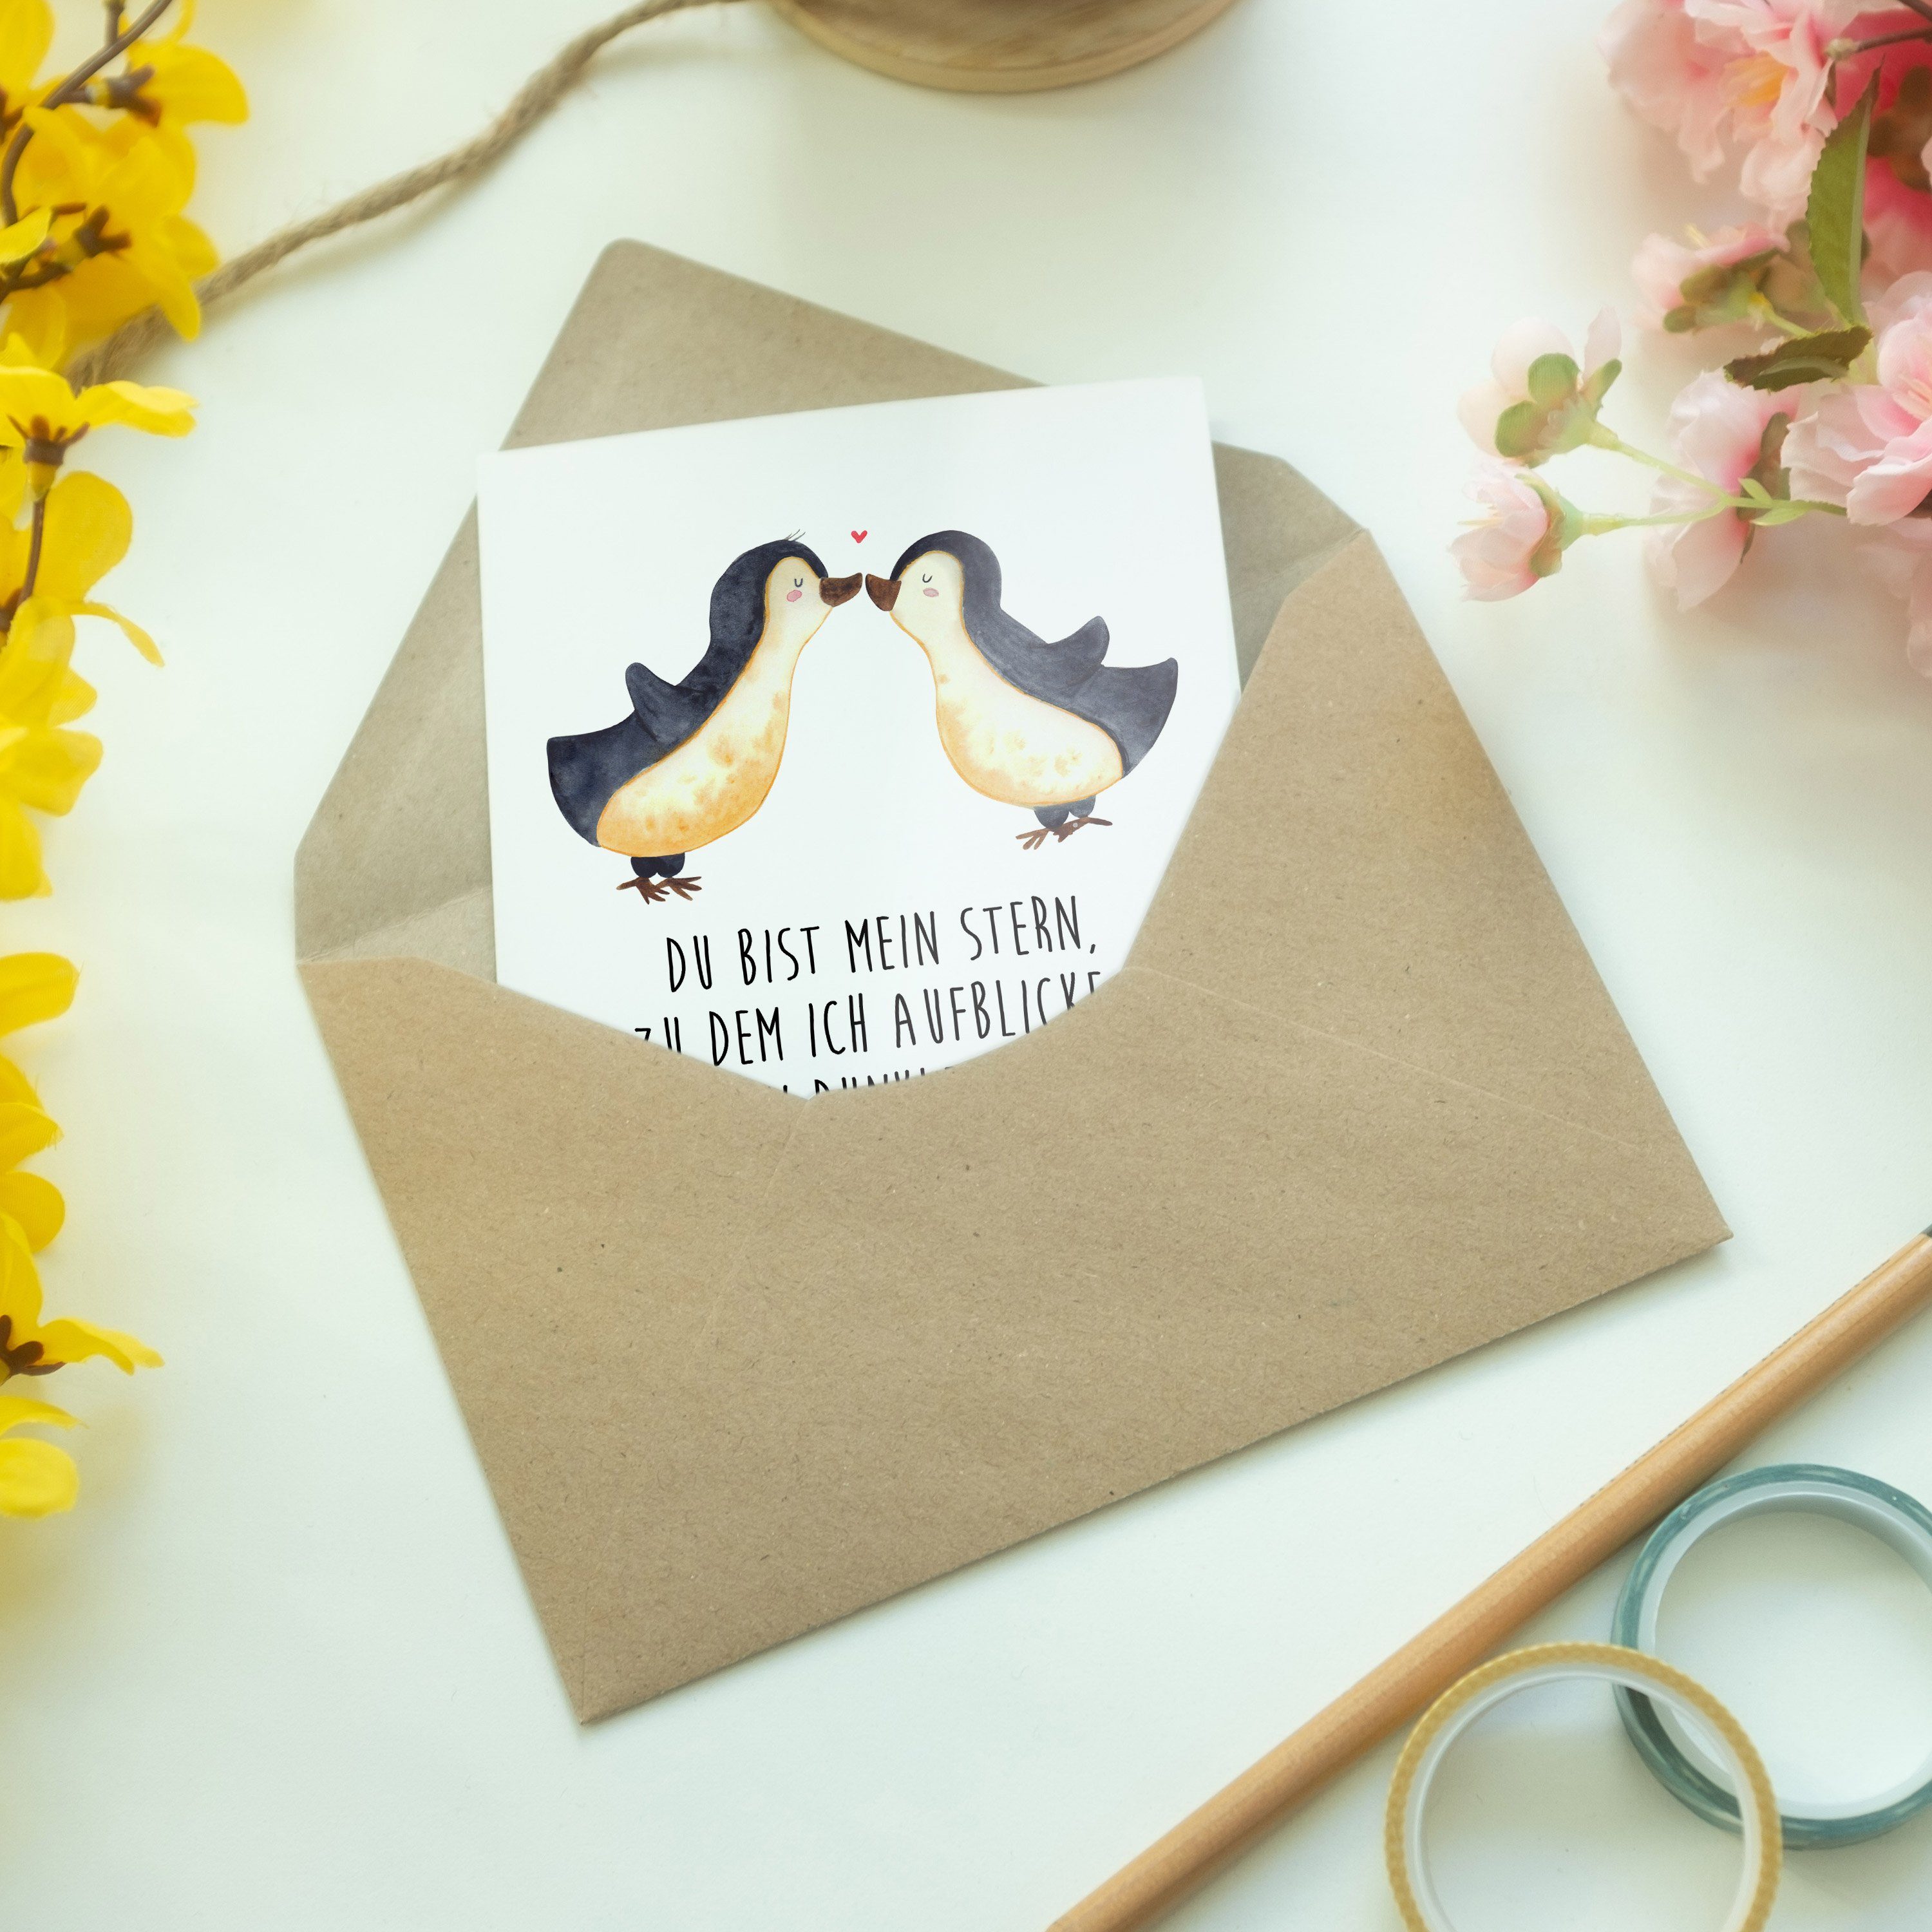 Mr. & Mrs. Panda Pinguin Grußkarte - - Geburtstagskarte, Weiß Liebe Hocheits Hochzeit, Geschenk